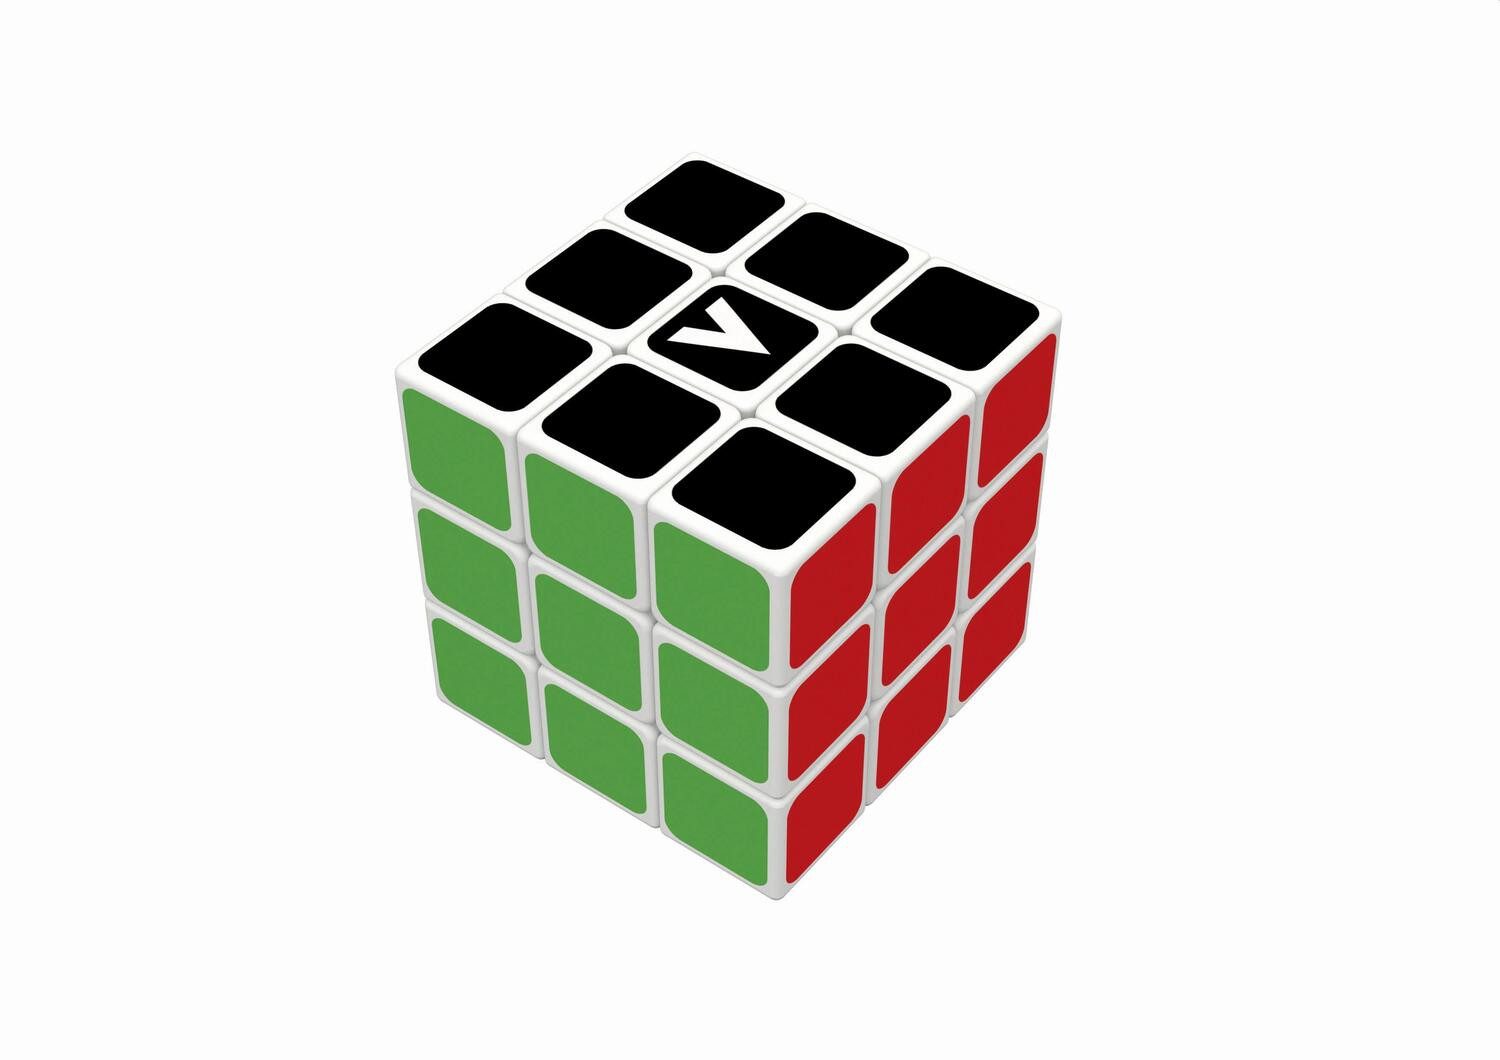 BrainBox Spiel, V-Cube - Zauberwürfel klassisch 3x3x3